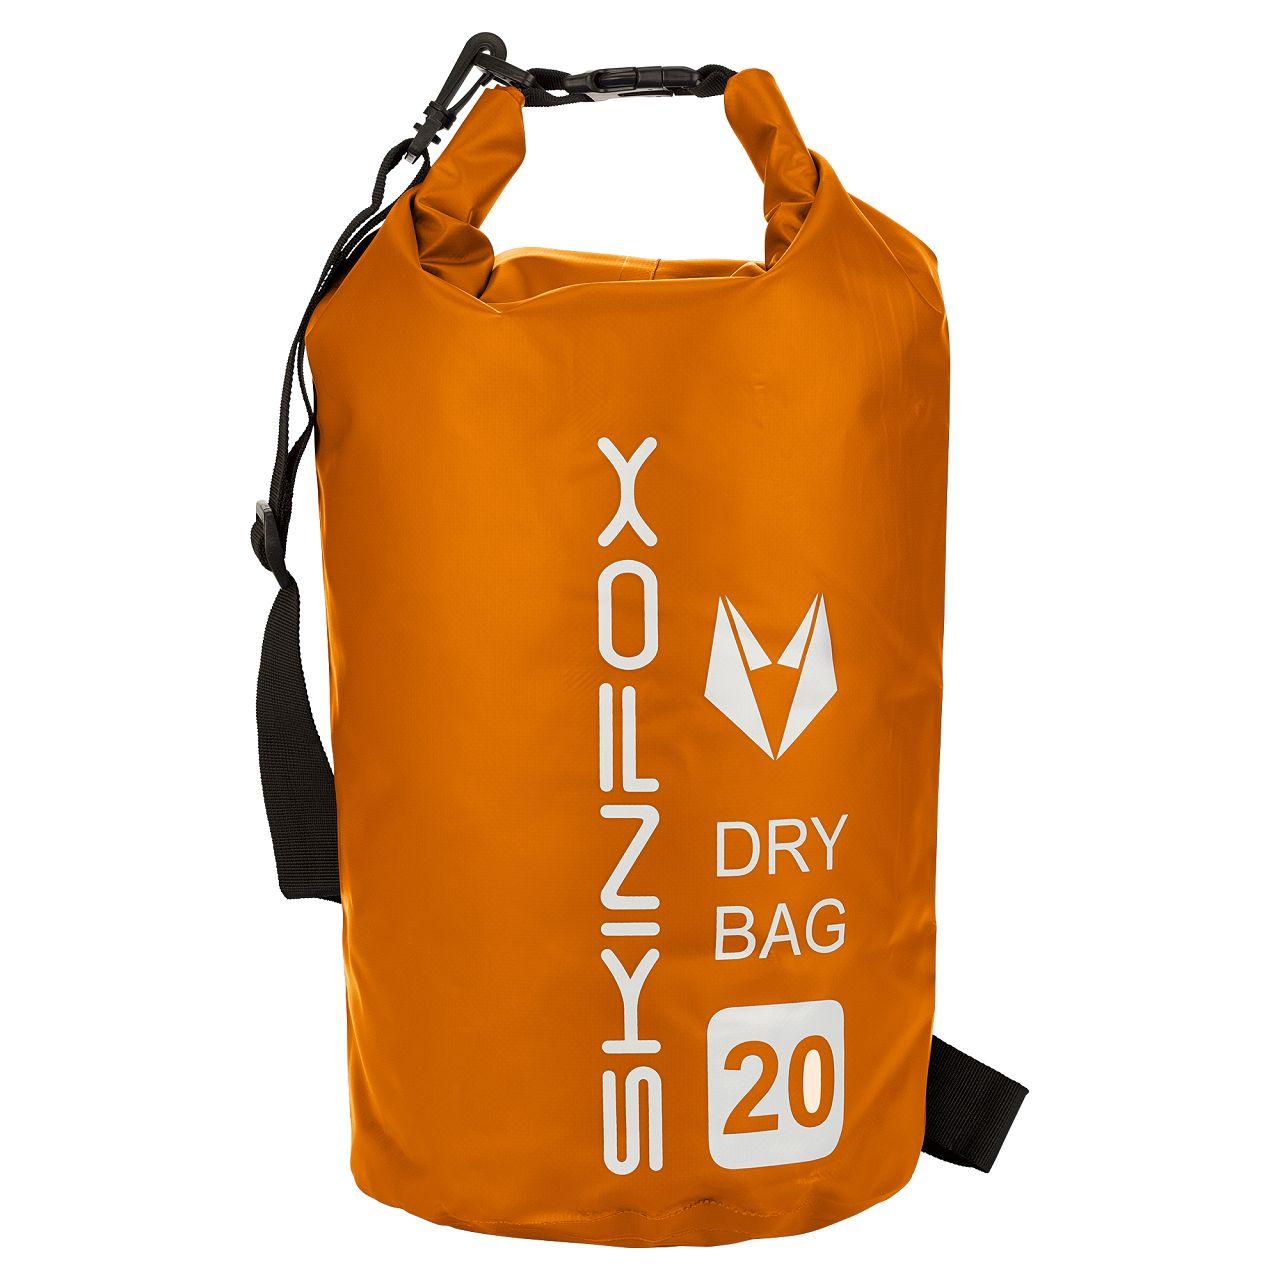 SKINFOX DryBag 5 Liter wasserdichte SUP Tasche 